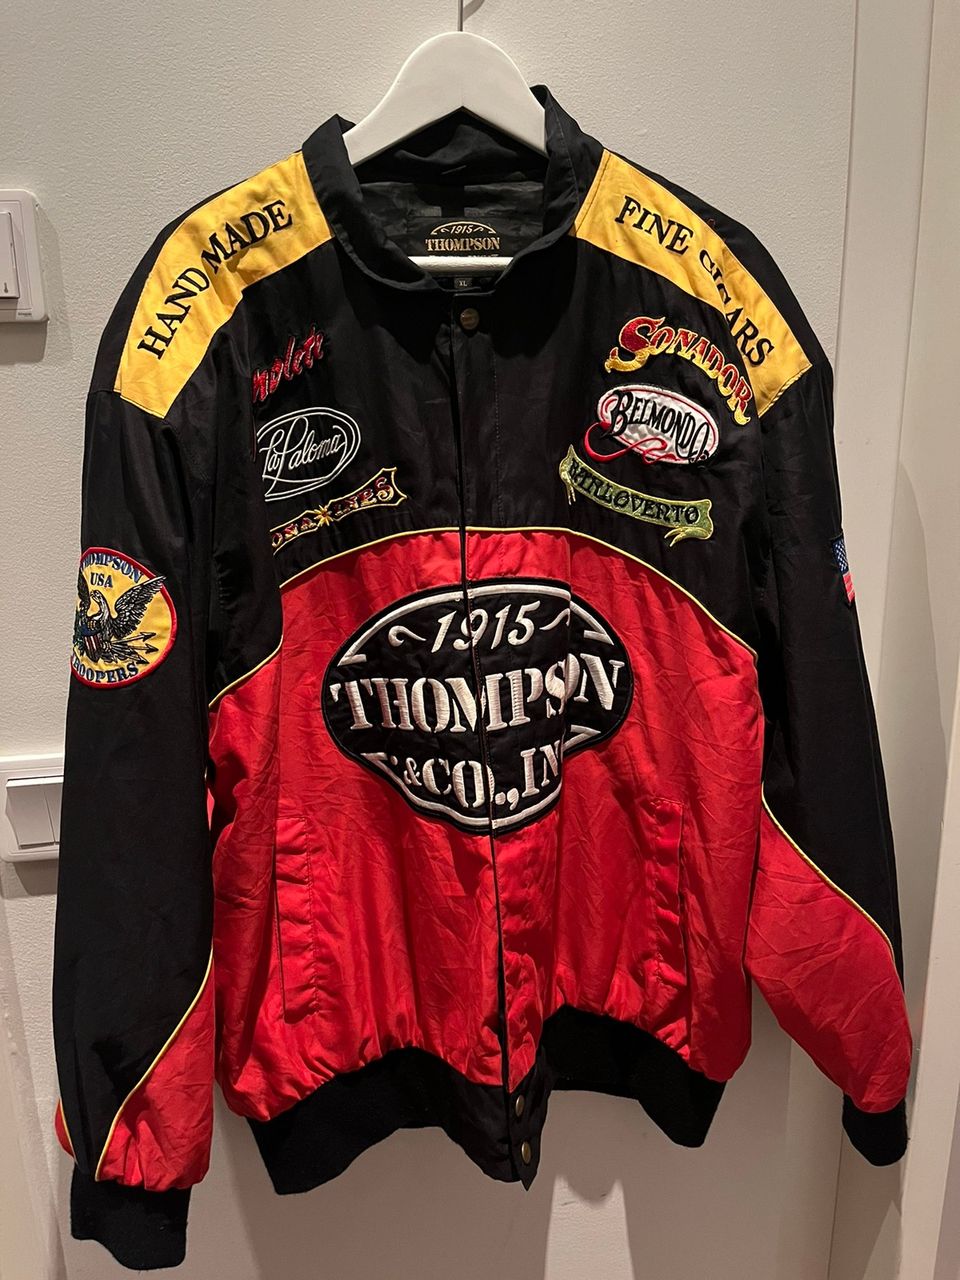 Thompson Cigar race jacket